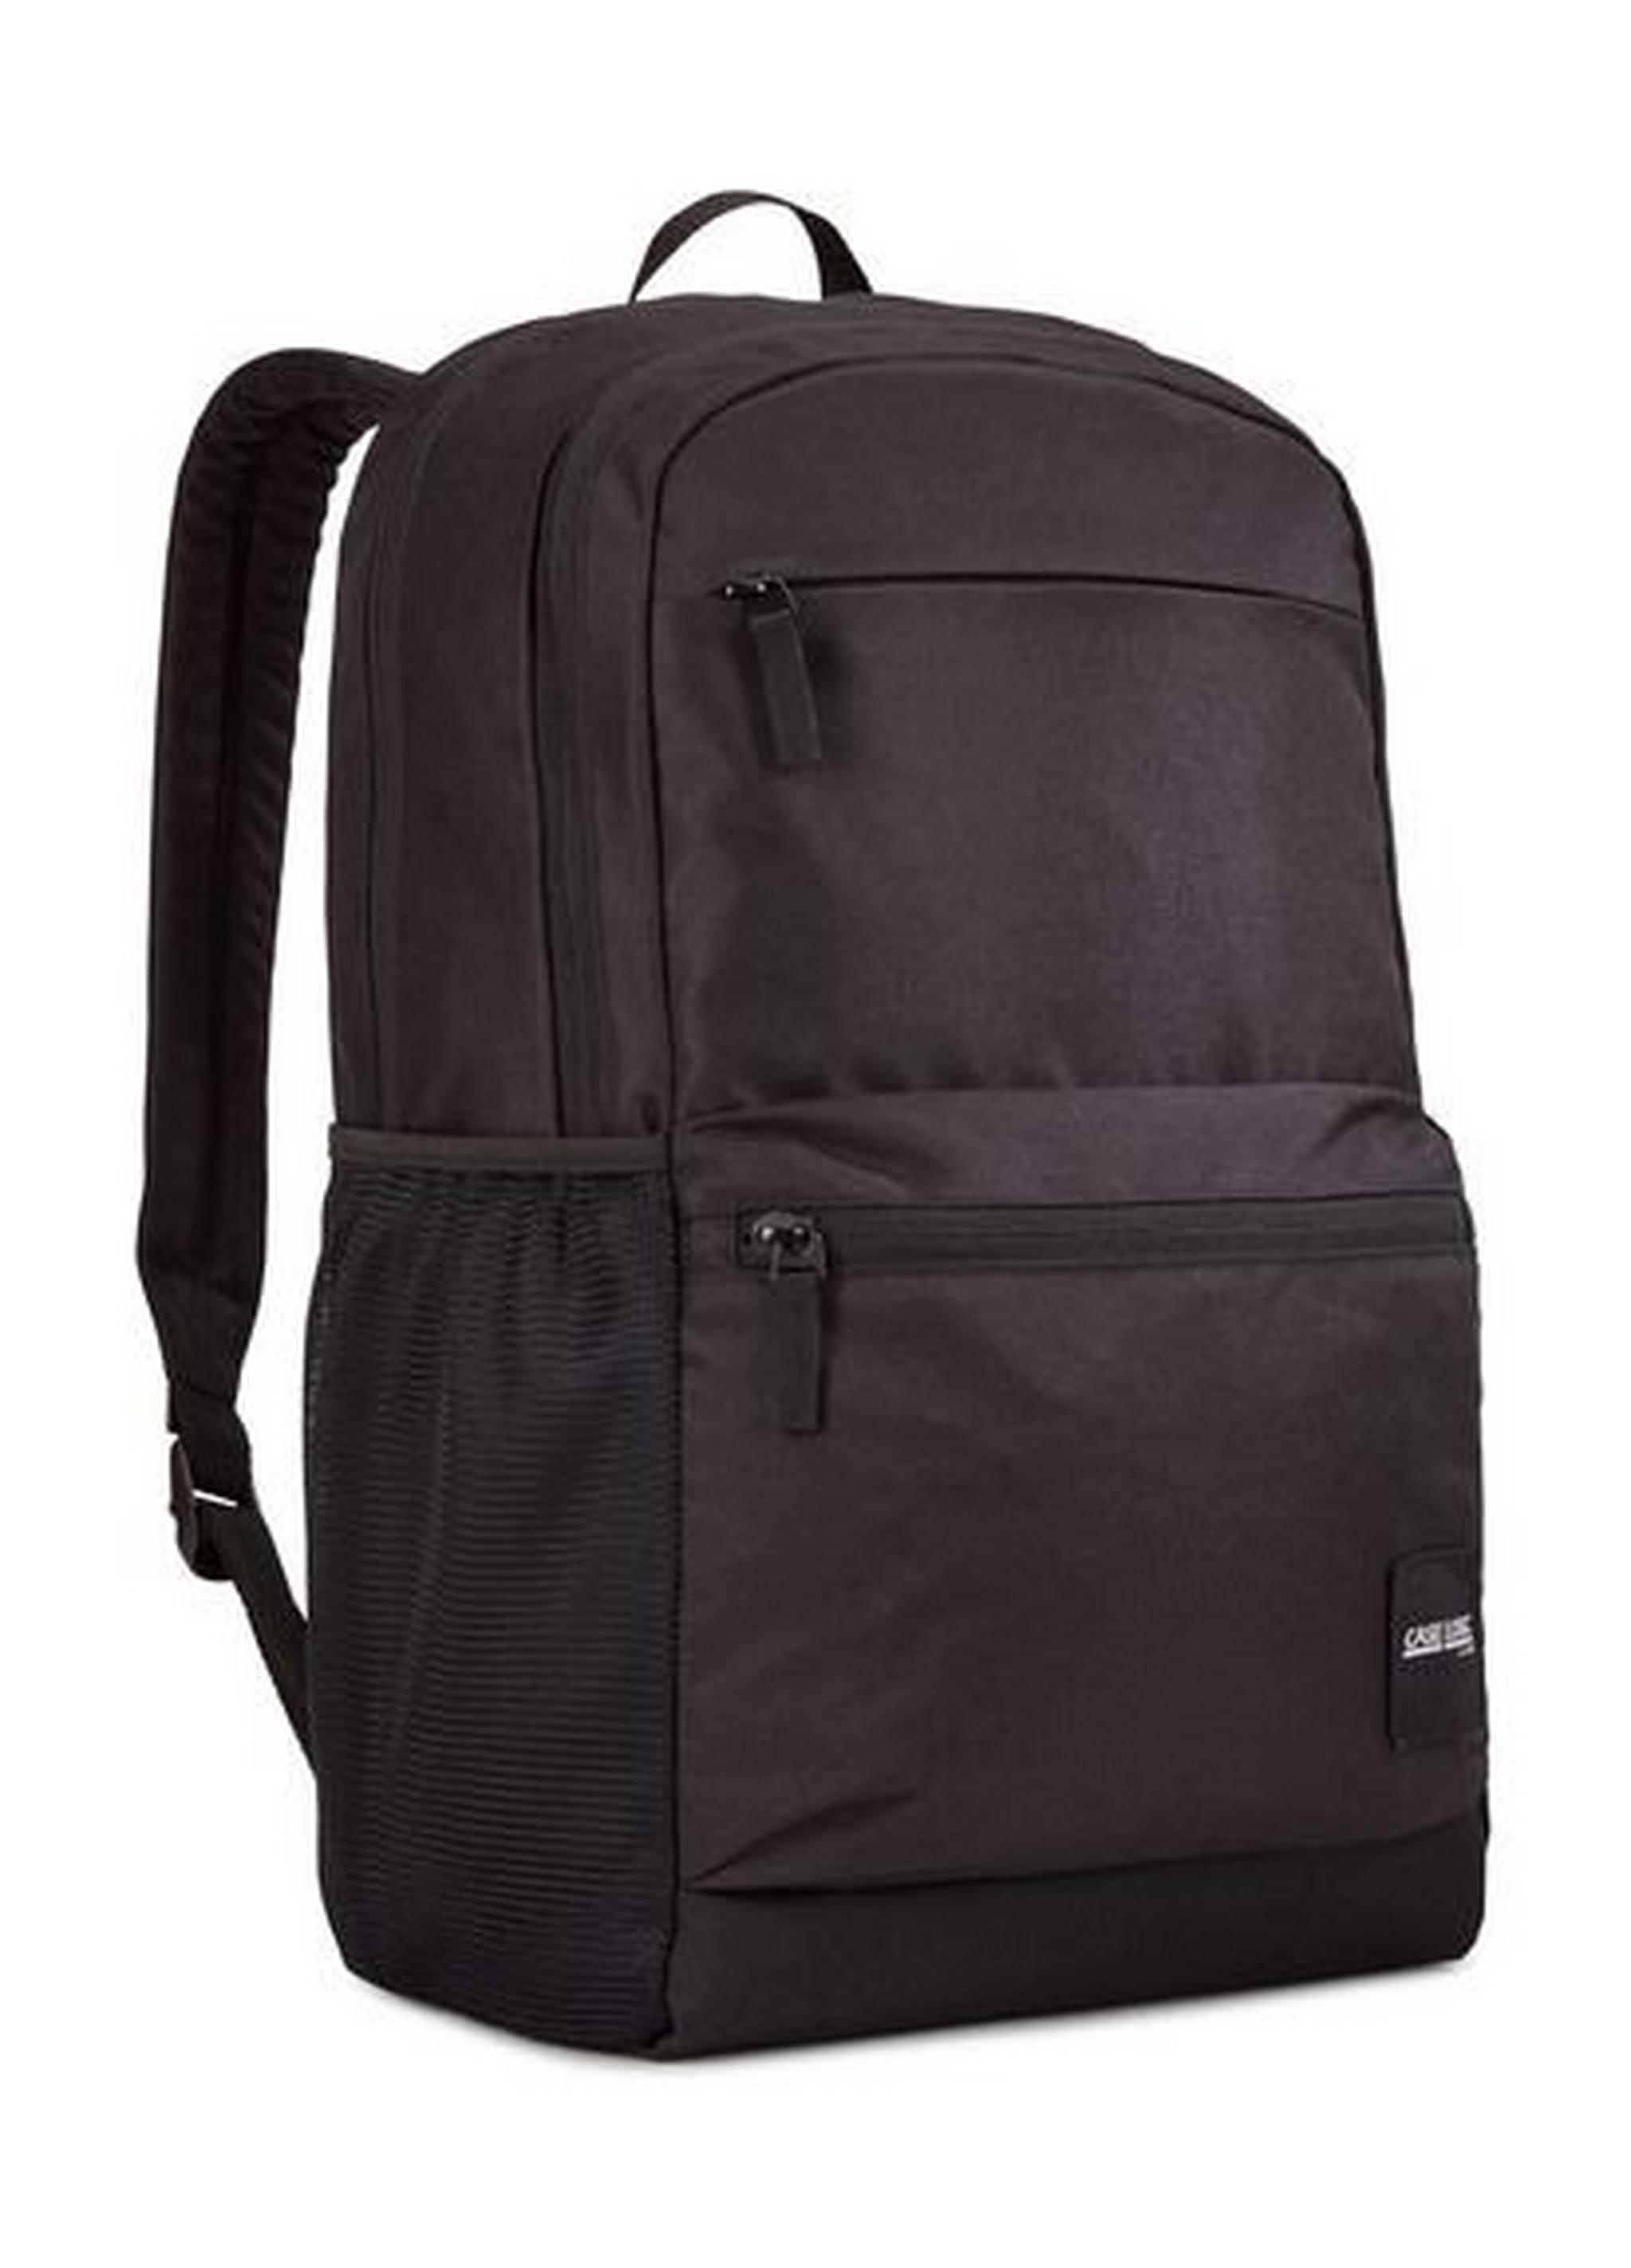 Case Logic Uplink 26L Backpack for up to 15.6 inch Laptop - Black Price ...